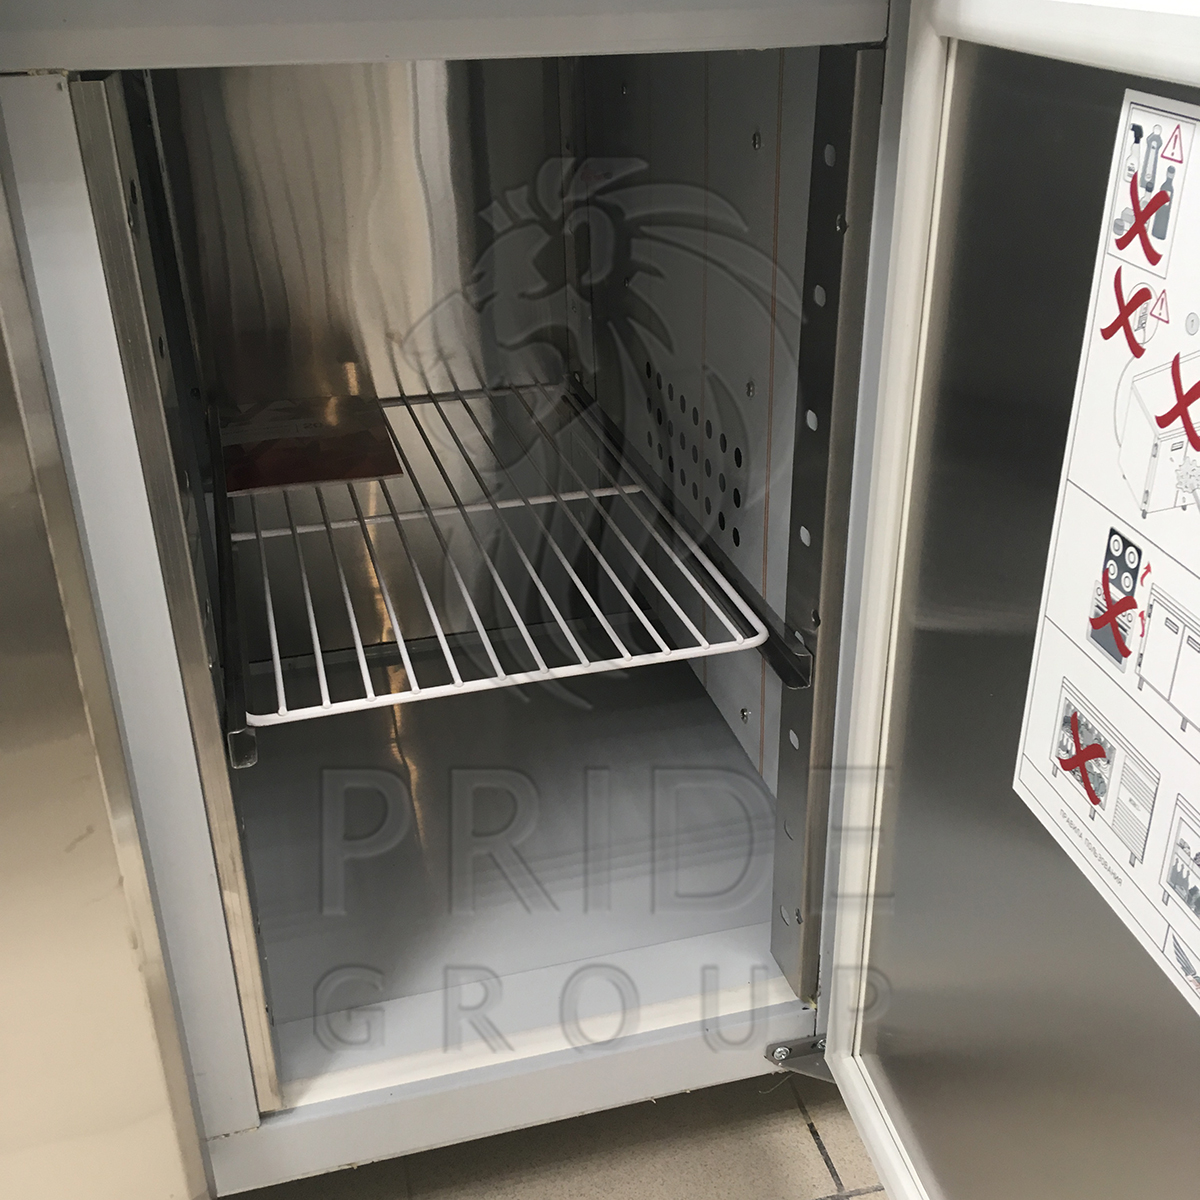 картинка Стол холодильный Finist СХС-700-3/2 2300х700х850 мм